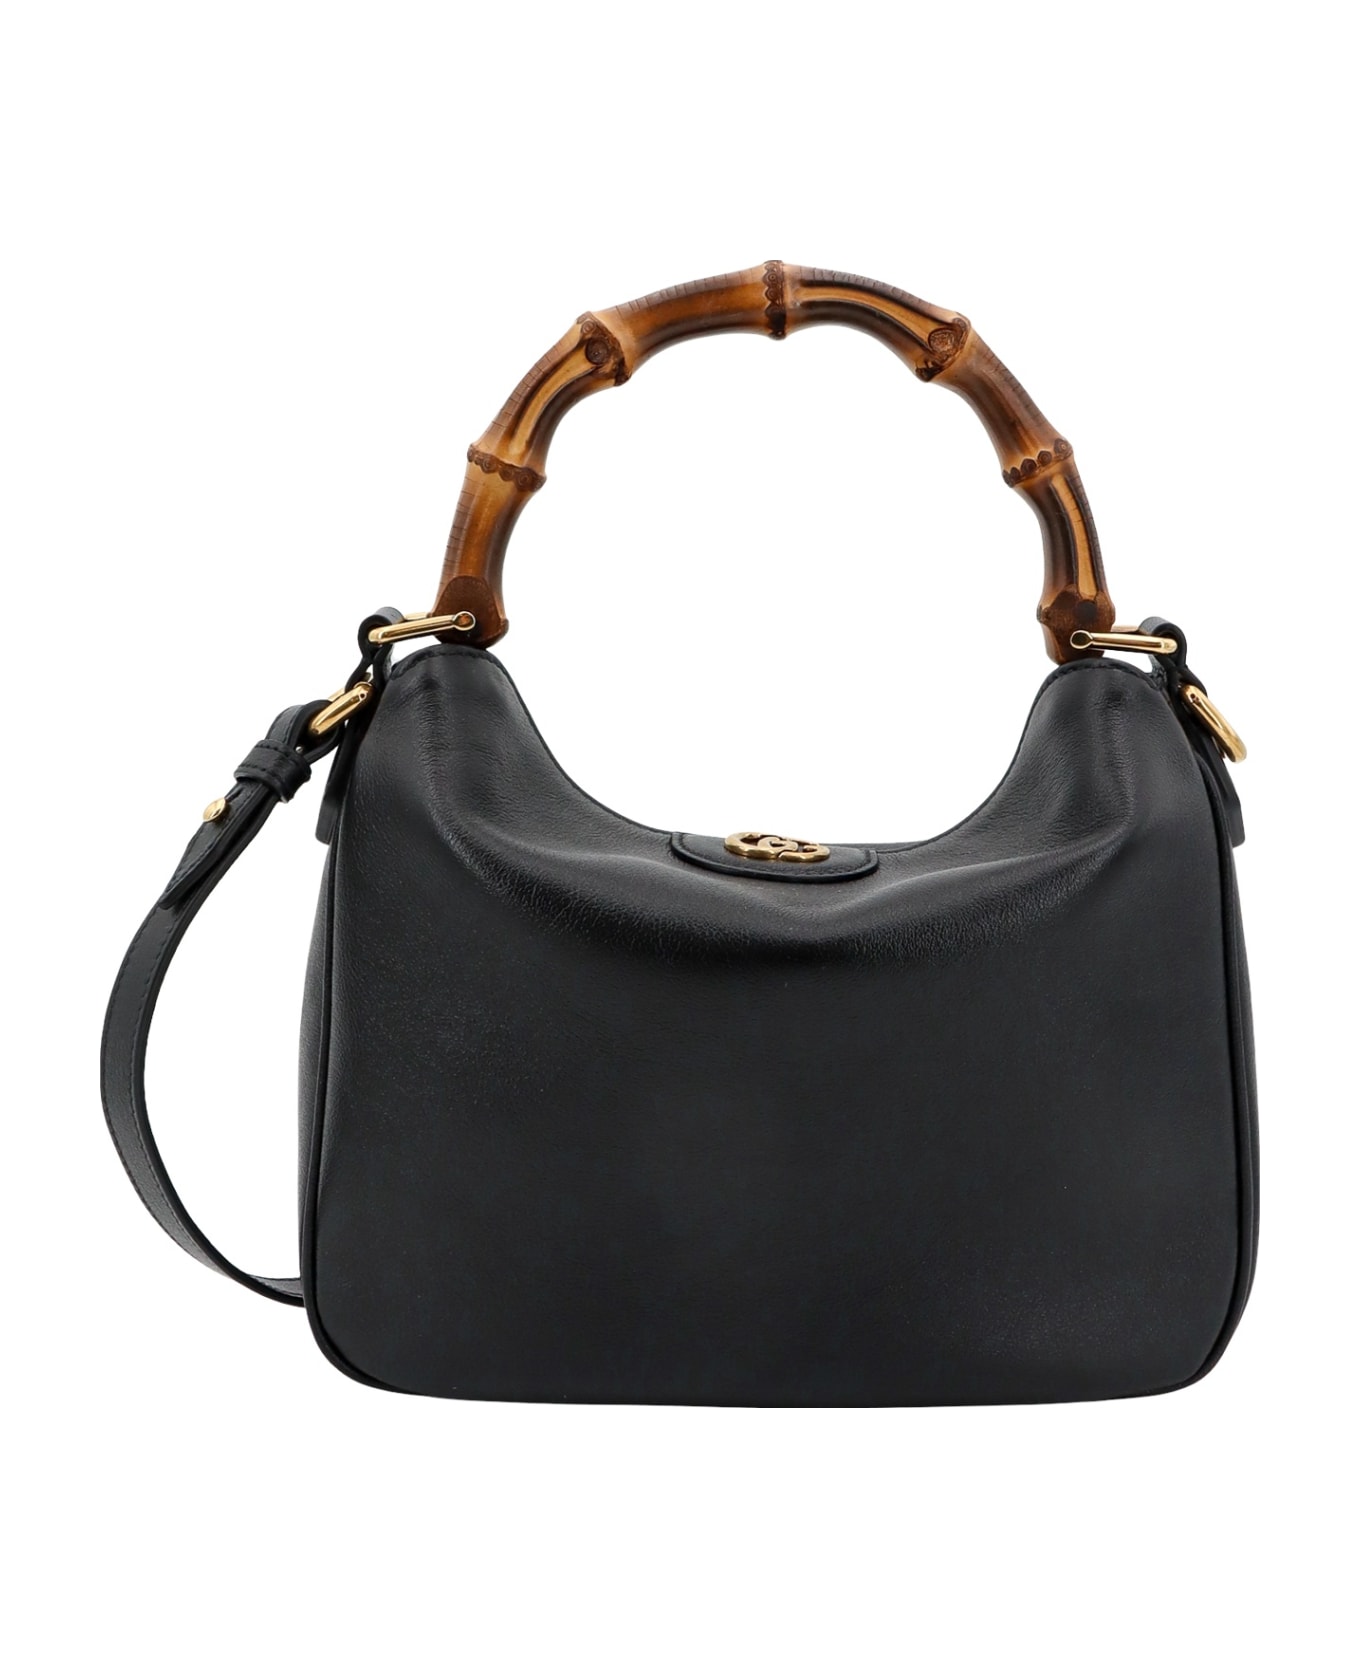 Gucci Diana Handbag - Black